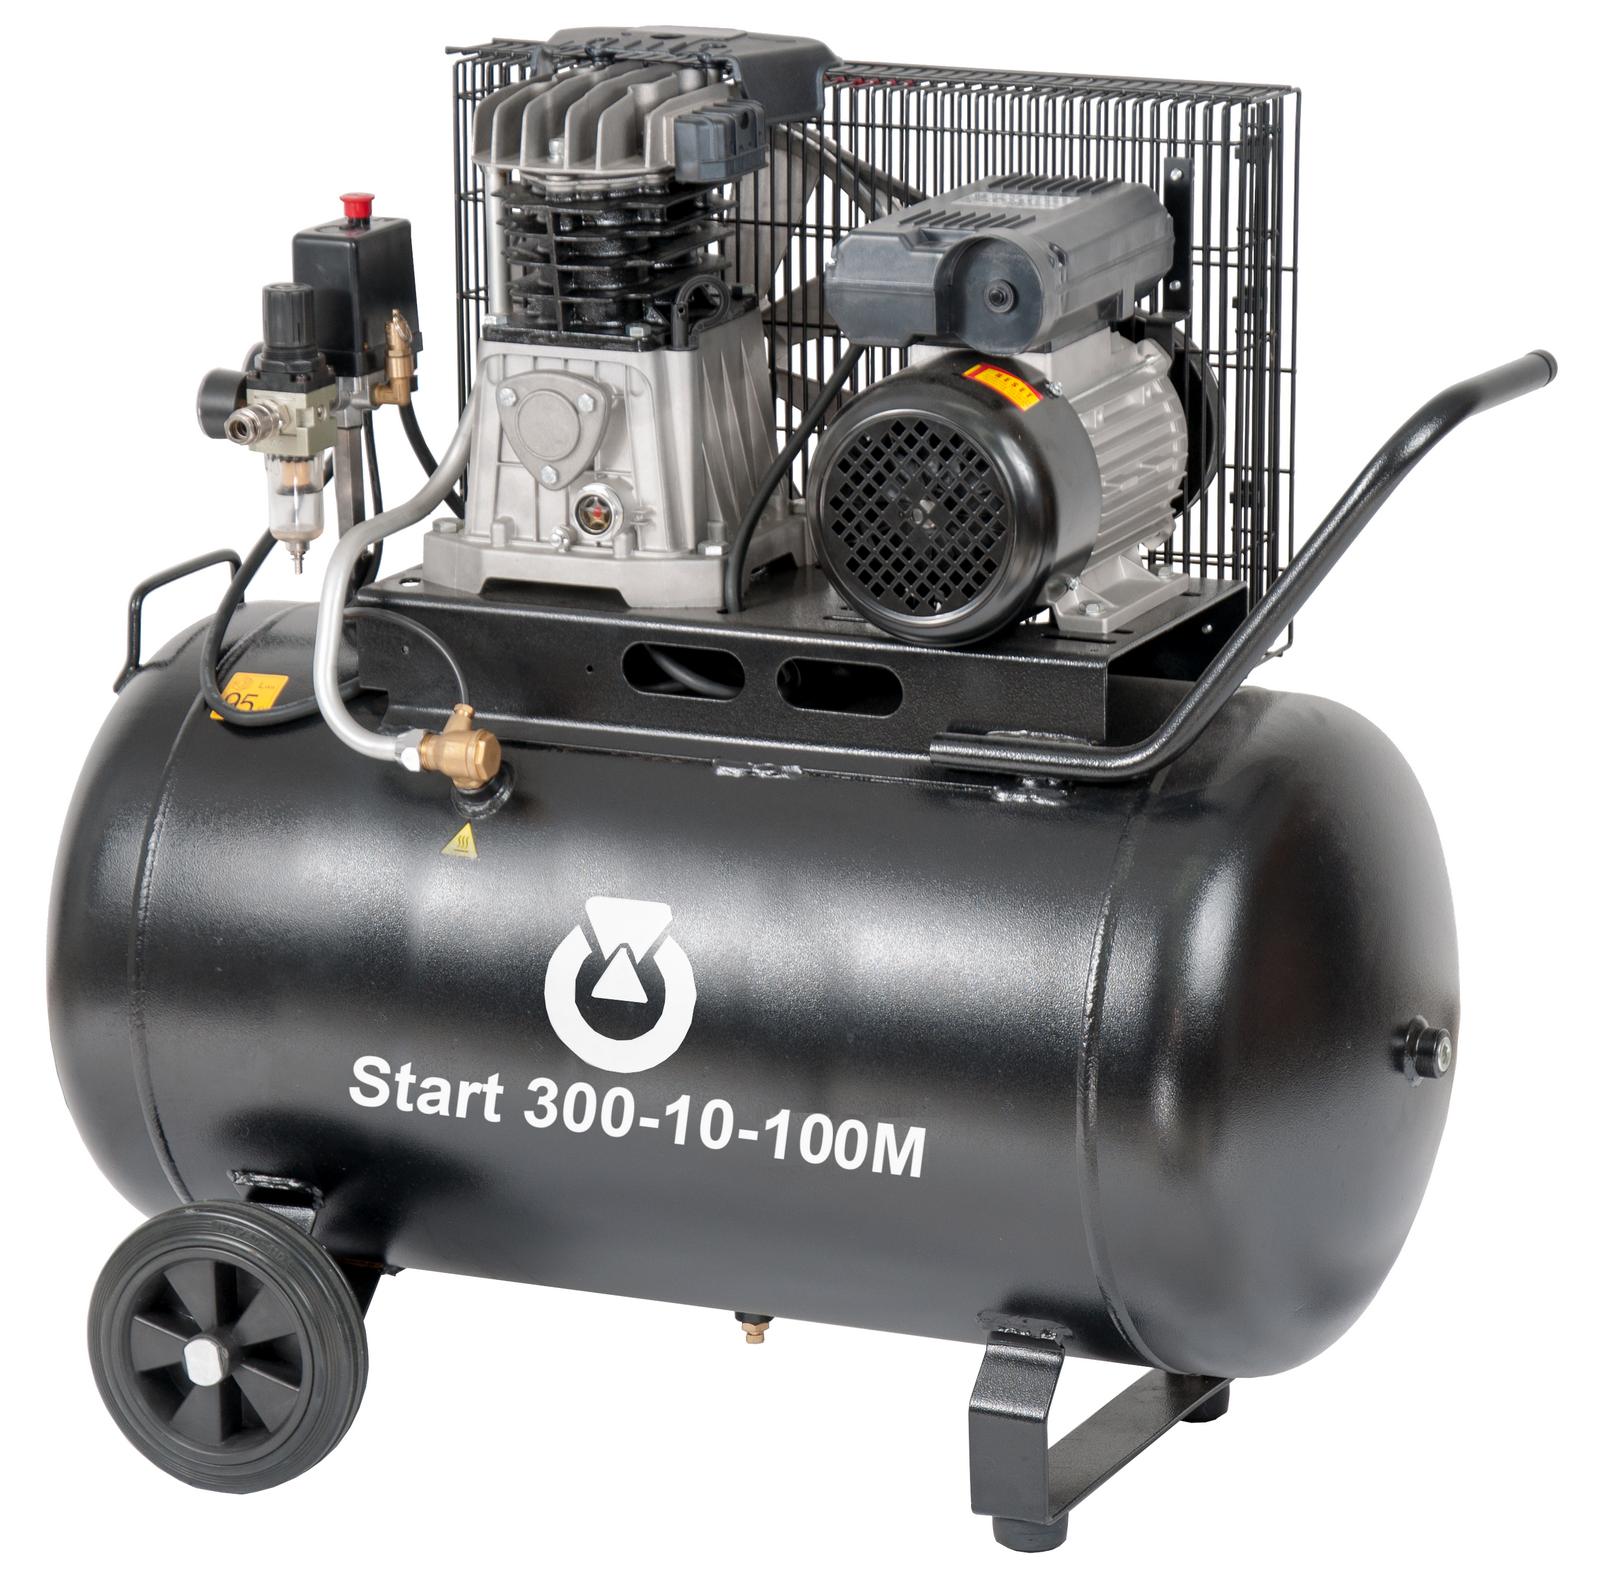 Start 300-10-100M - Pojízdný pístový kompresor START 2,2 kW